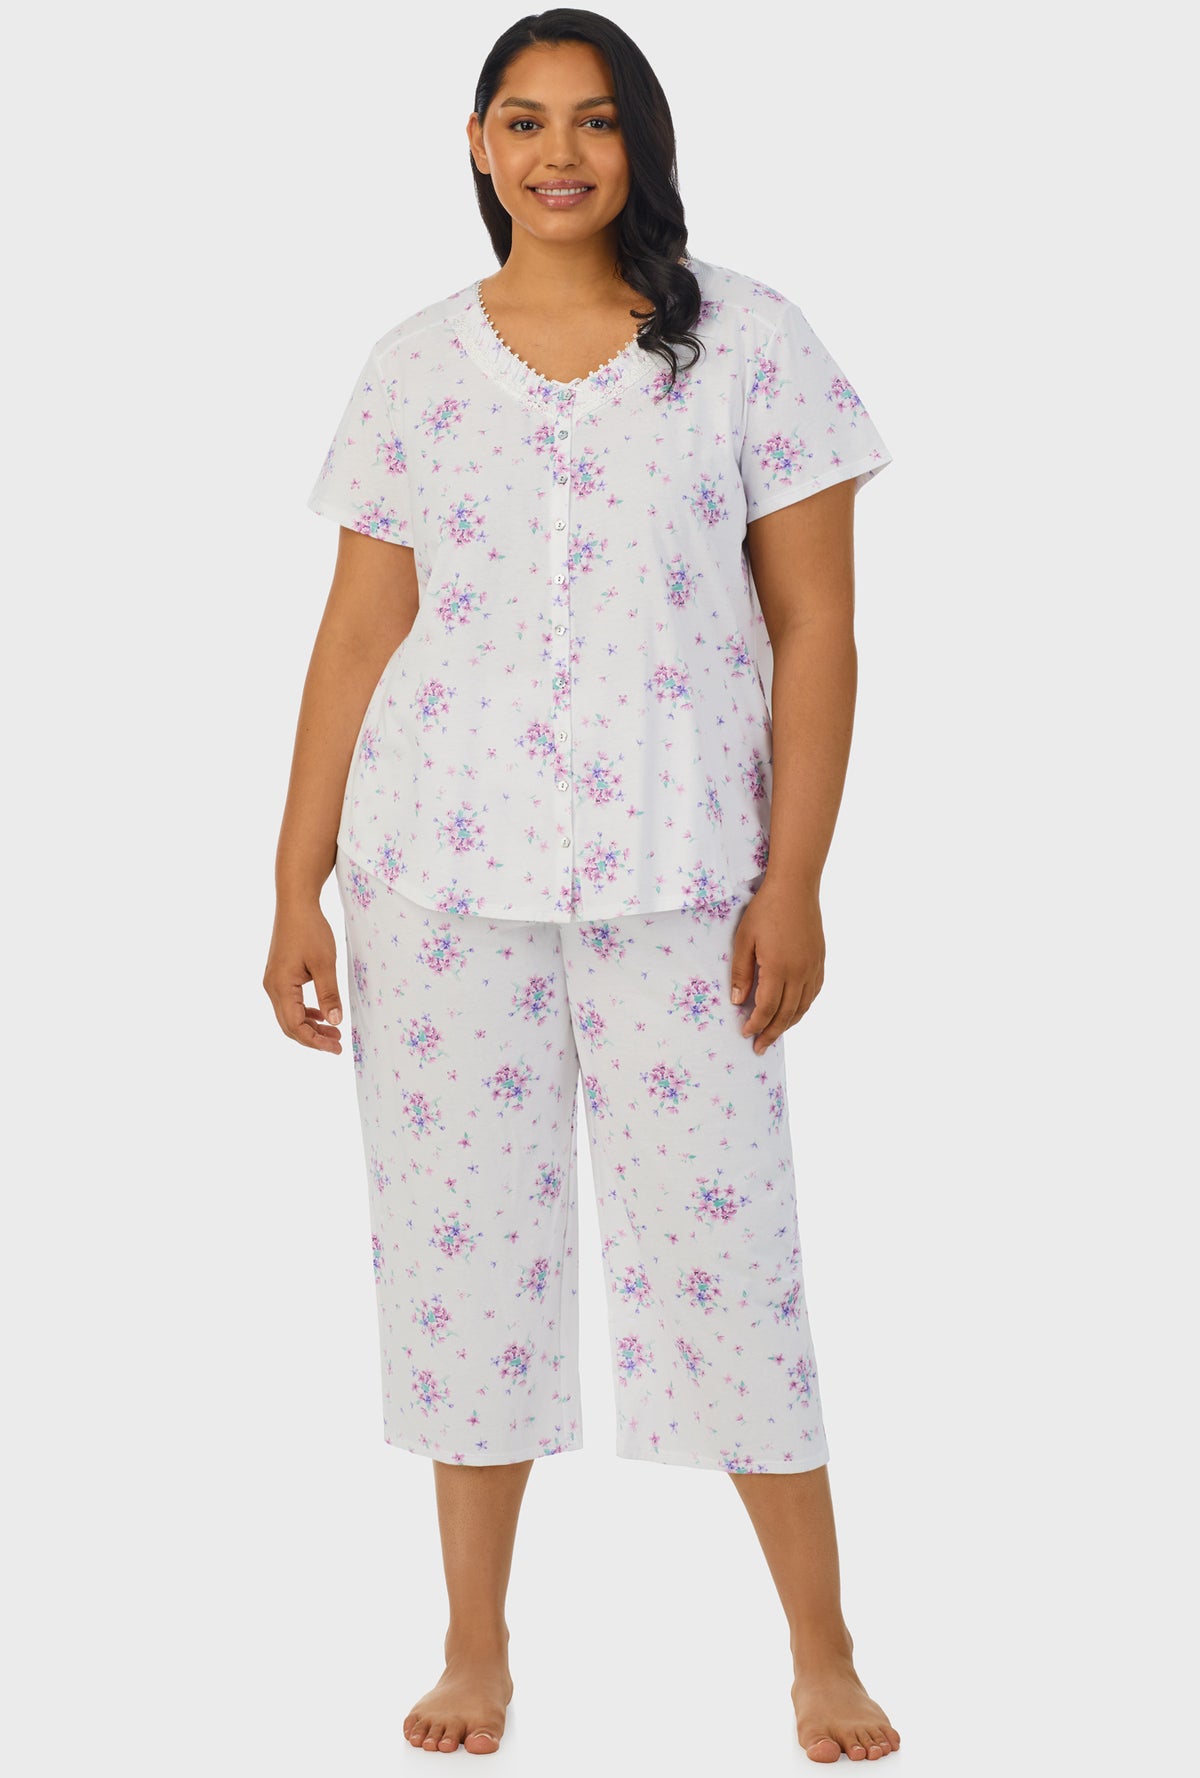 A lady wearing purple short sleeve capri pant plus size pj set with mulberry purple floral bouquet print.